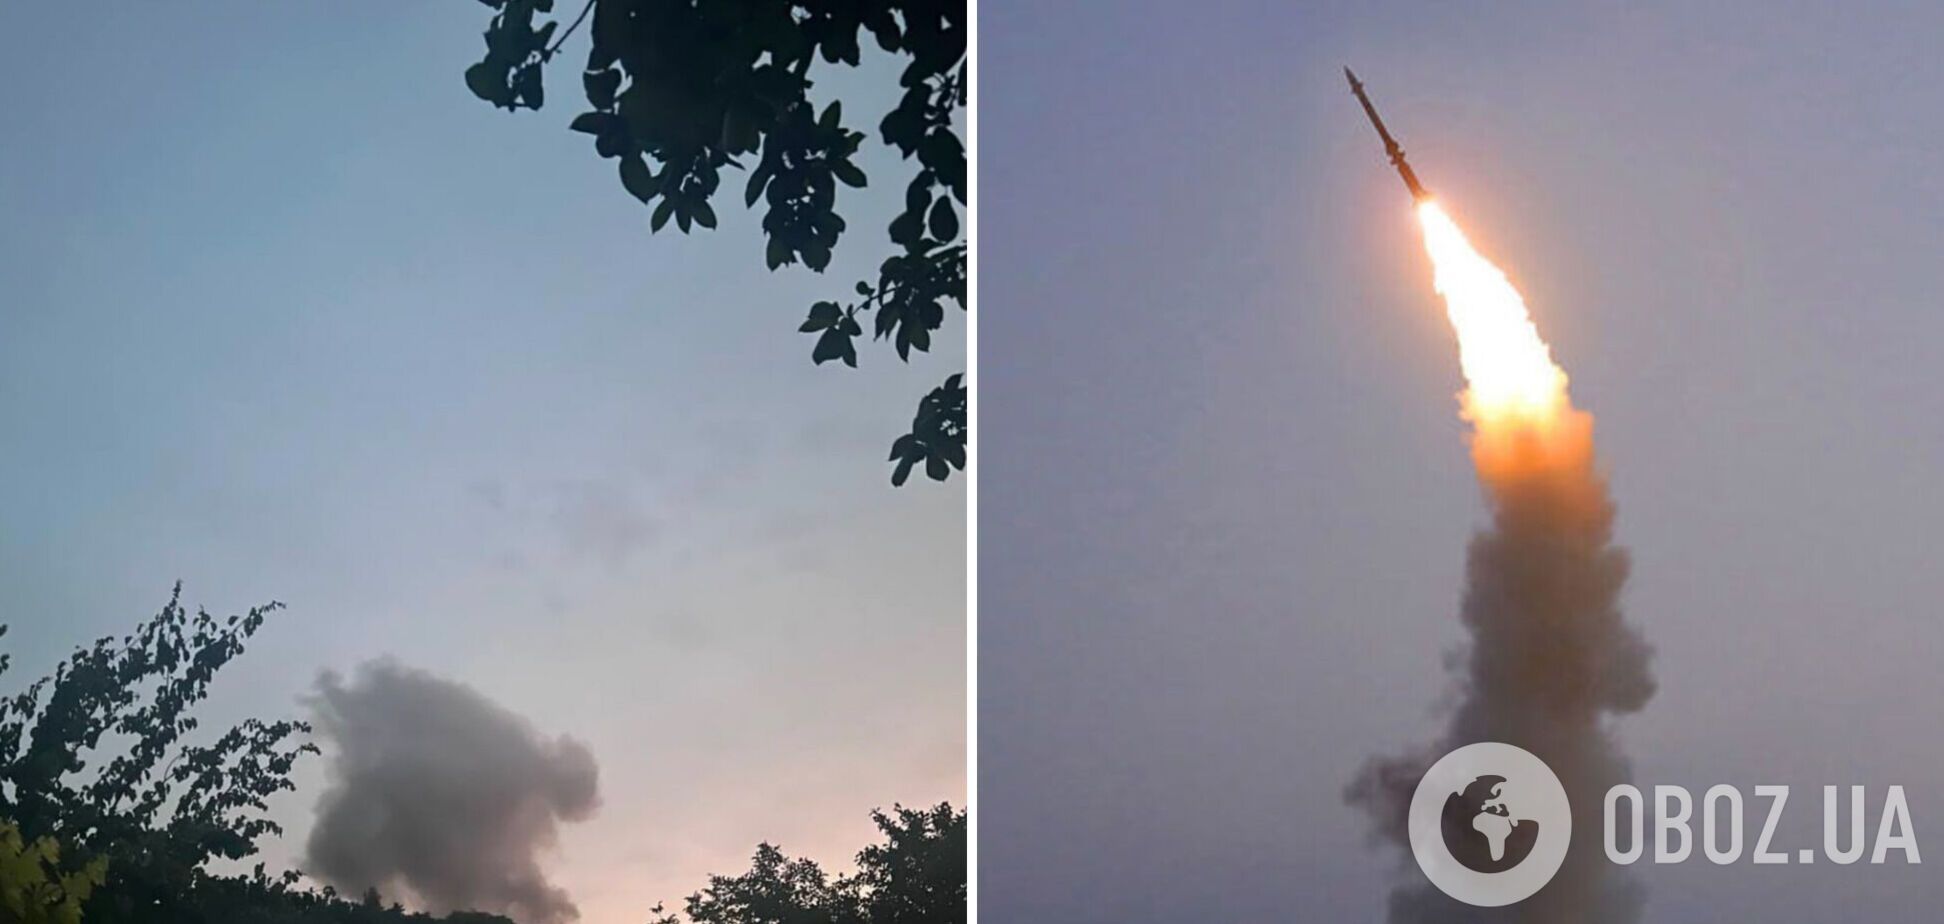 Над Золочевом на Львовщине сбили вражескую ракету: пострадали четыре человека. Фото